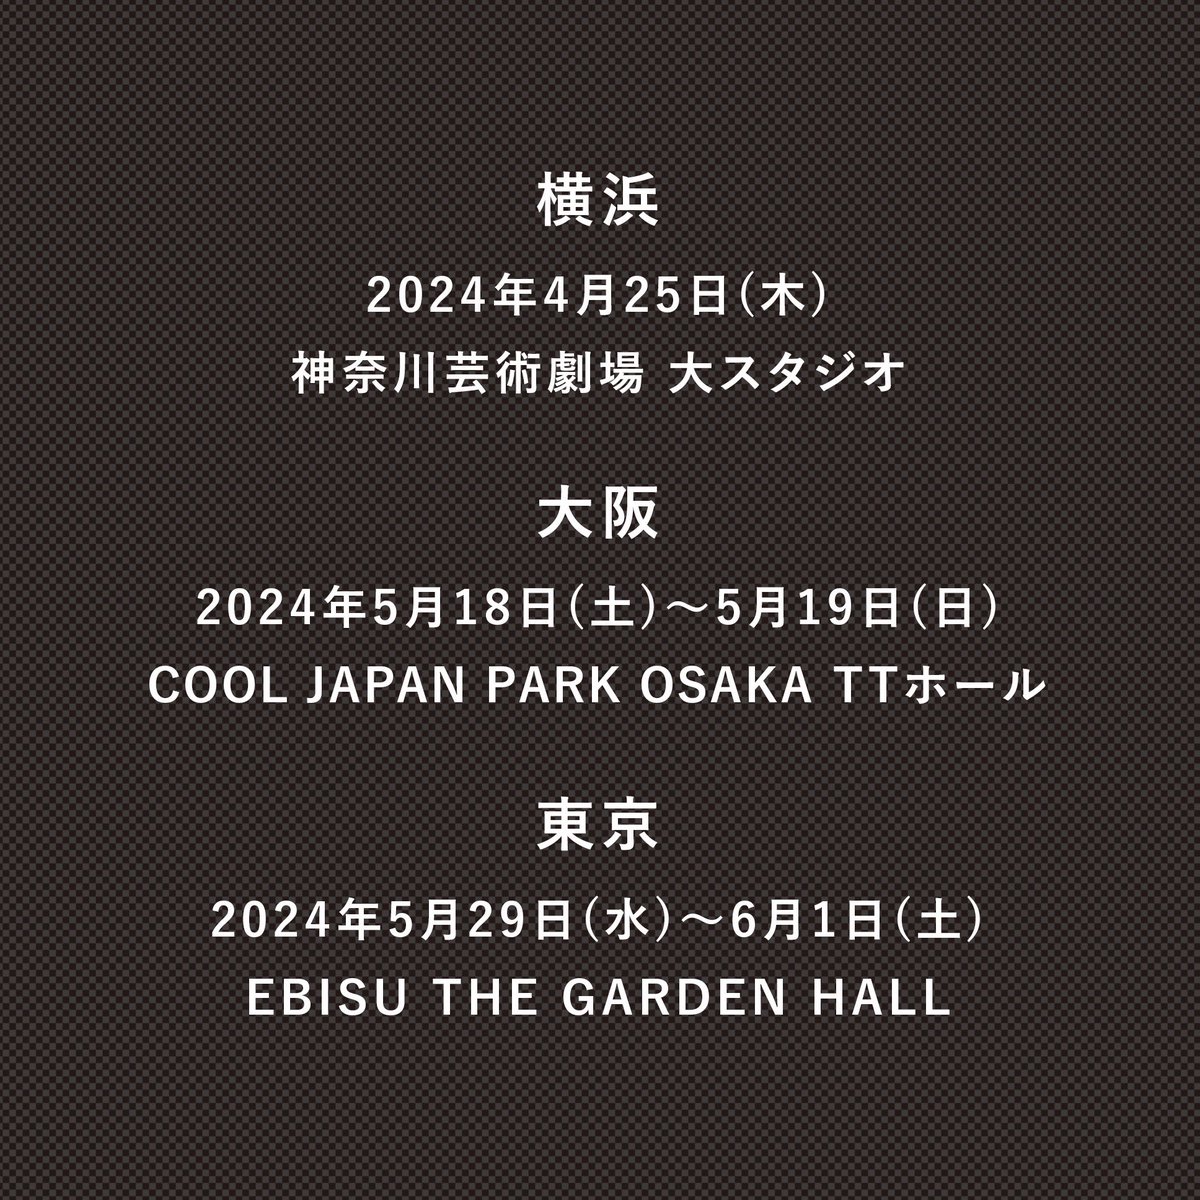 [スタッフ]
『 KREVA CLASS -新しいラップの教室- 』
4/25(木)神奈川芸術劇場 大スタジオ

遂に開演！
KAATご観劇いただいた皆様、ありがとうございました。最高でした!!

次は大阪！
5/18(土) 19(日) COOL JAPAN PARK OSAKA
🎟️w.pia.jp/t/krevaclass/

#KREVA
#小林賢太郎
#GABEZ
#熊井吾郎
#Barclay